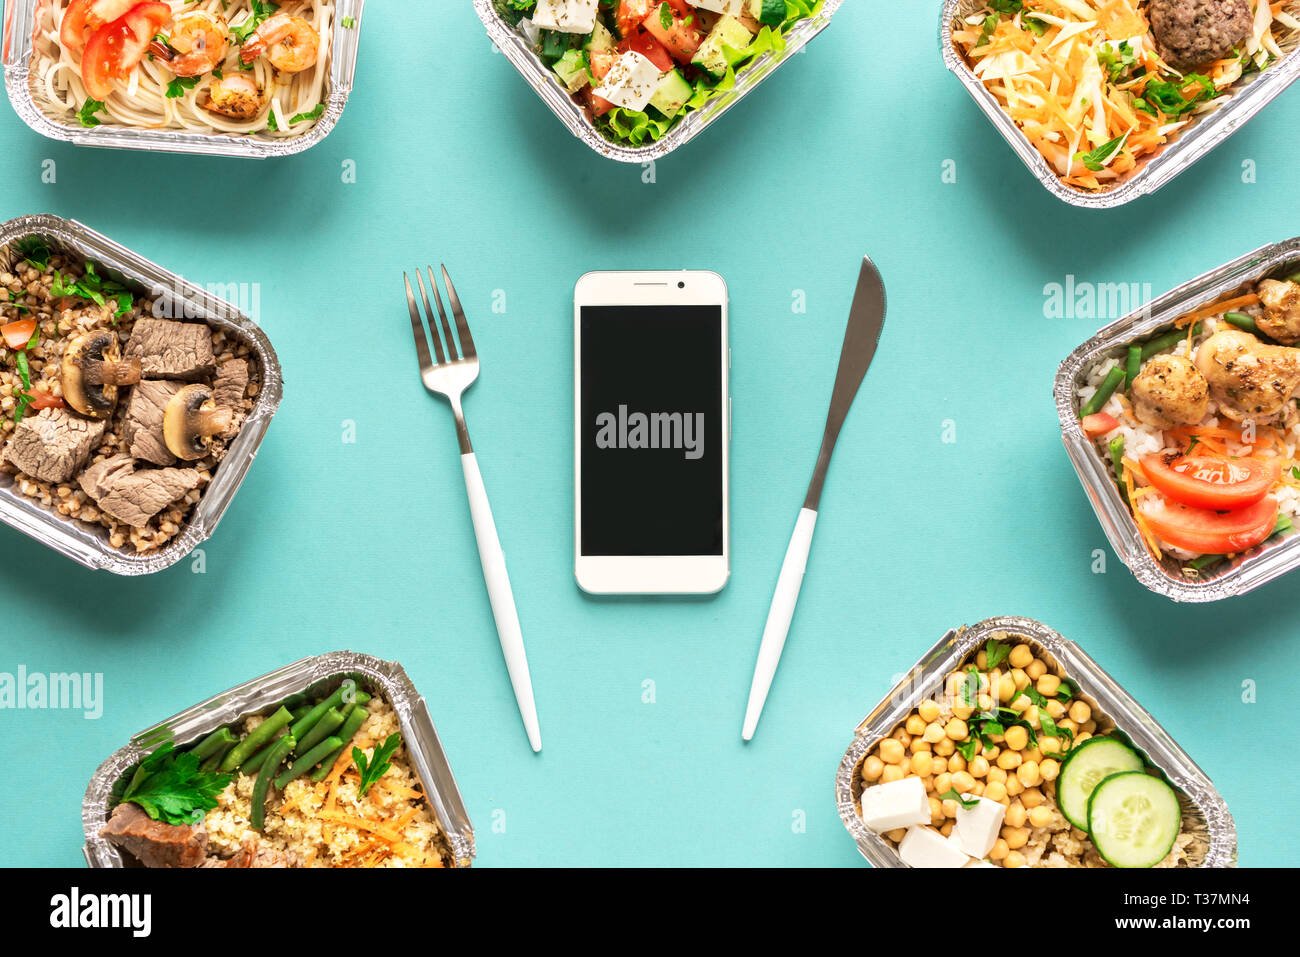 Täglichen Mahlzeiten in Folie Boxen und Smartphone, Ansicht von oben, flach. Gesundes Essen Lieferung Konzept. Fitness Ernährung für Ernährung. Stockfoto